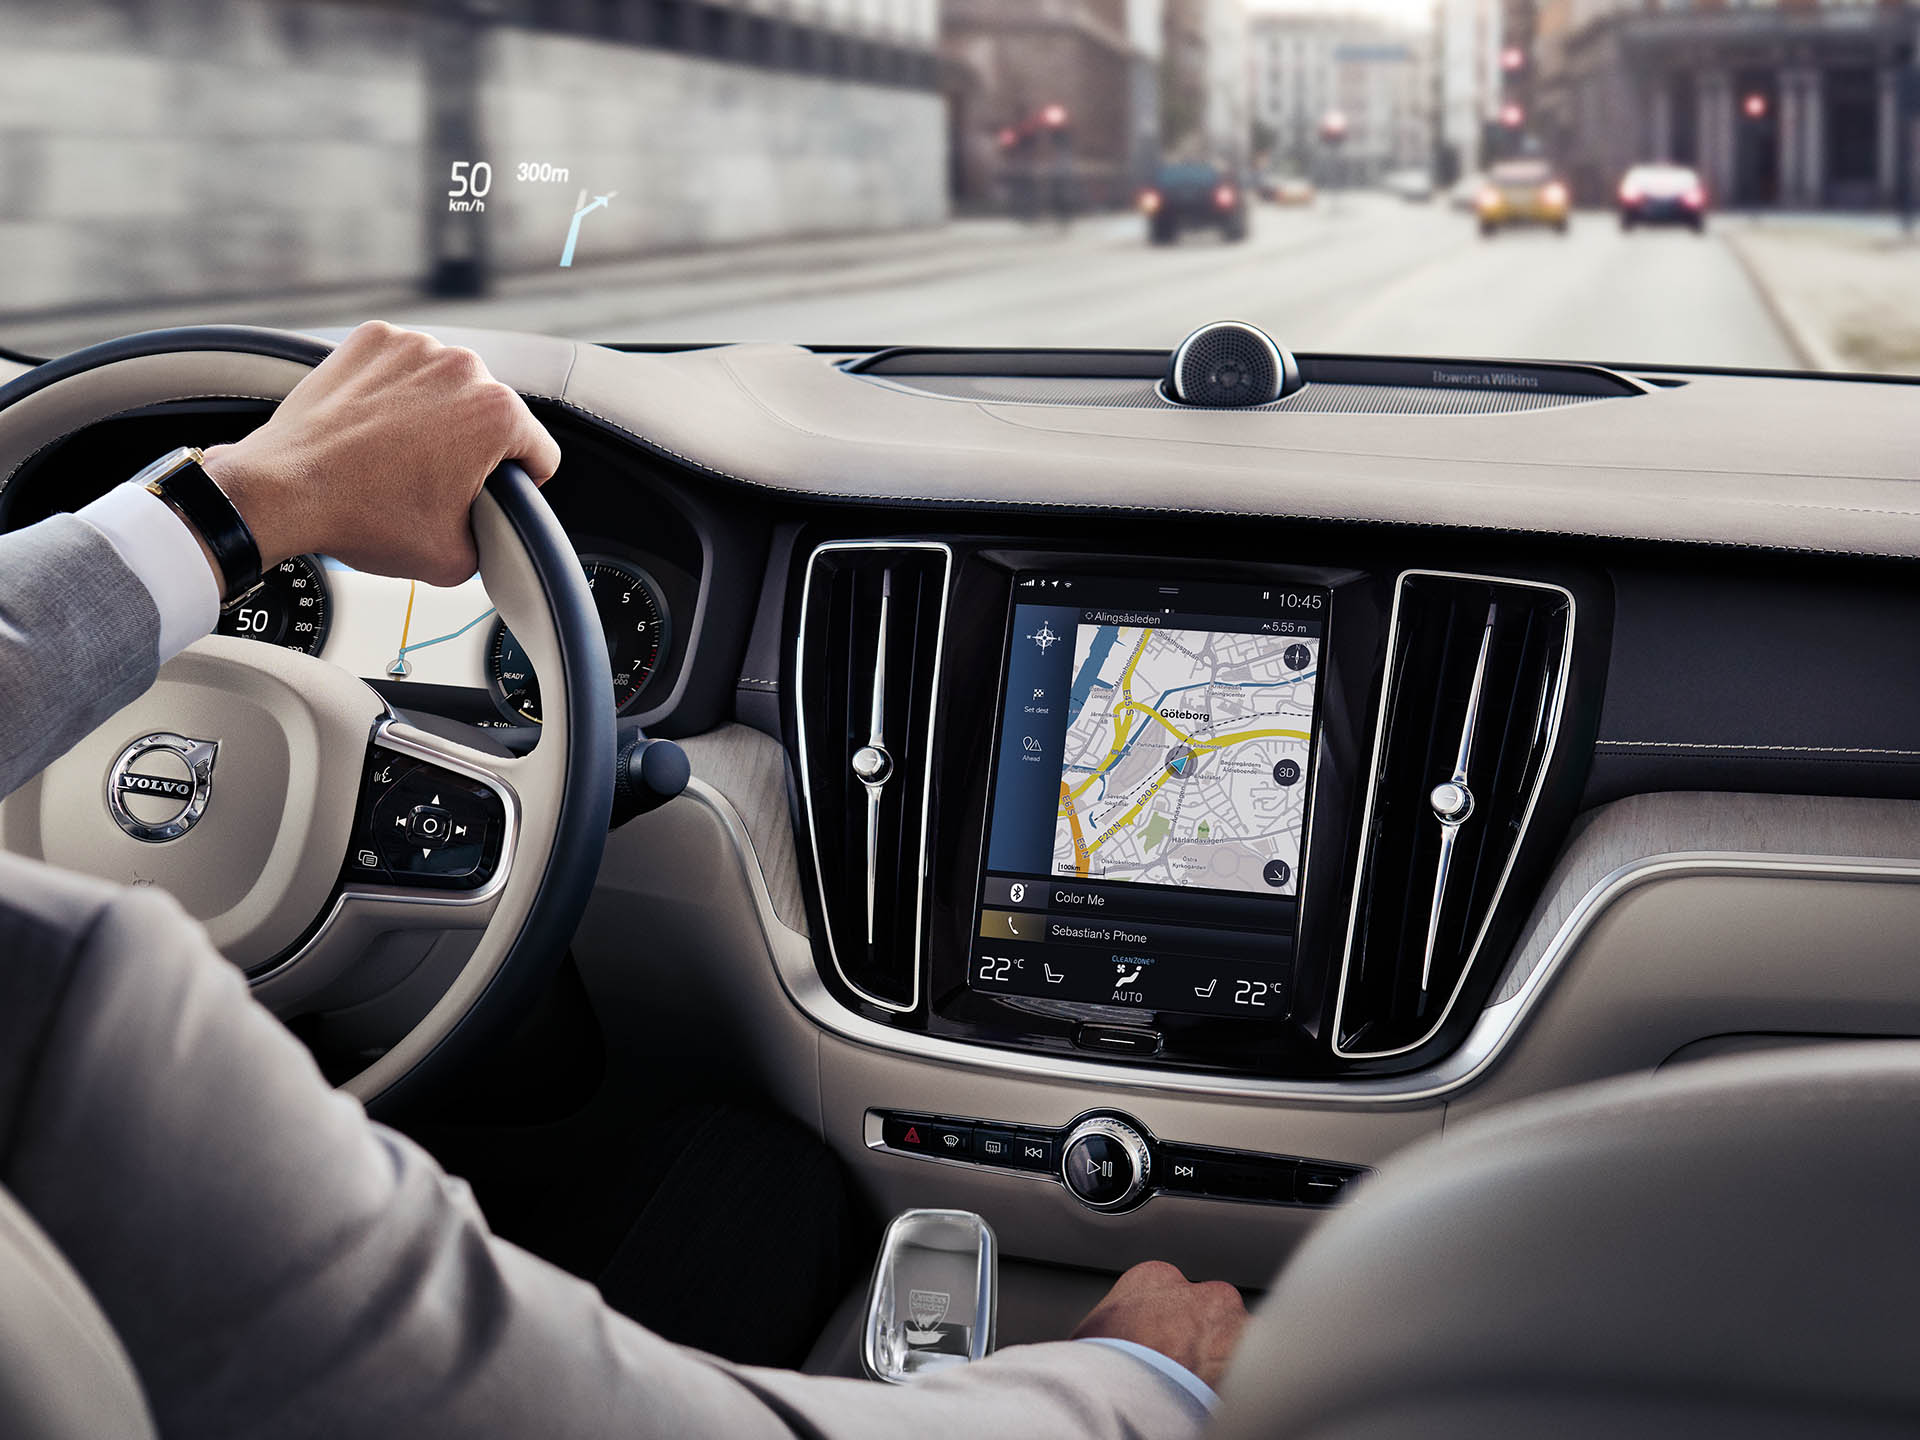 Unutrašnjost Volvo limuzine, muškarac vozi po putu uz pomoć sistema za navigaciju